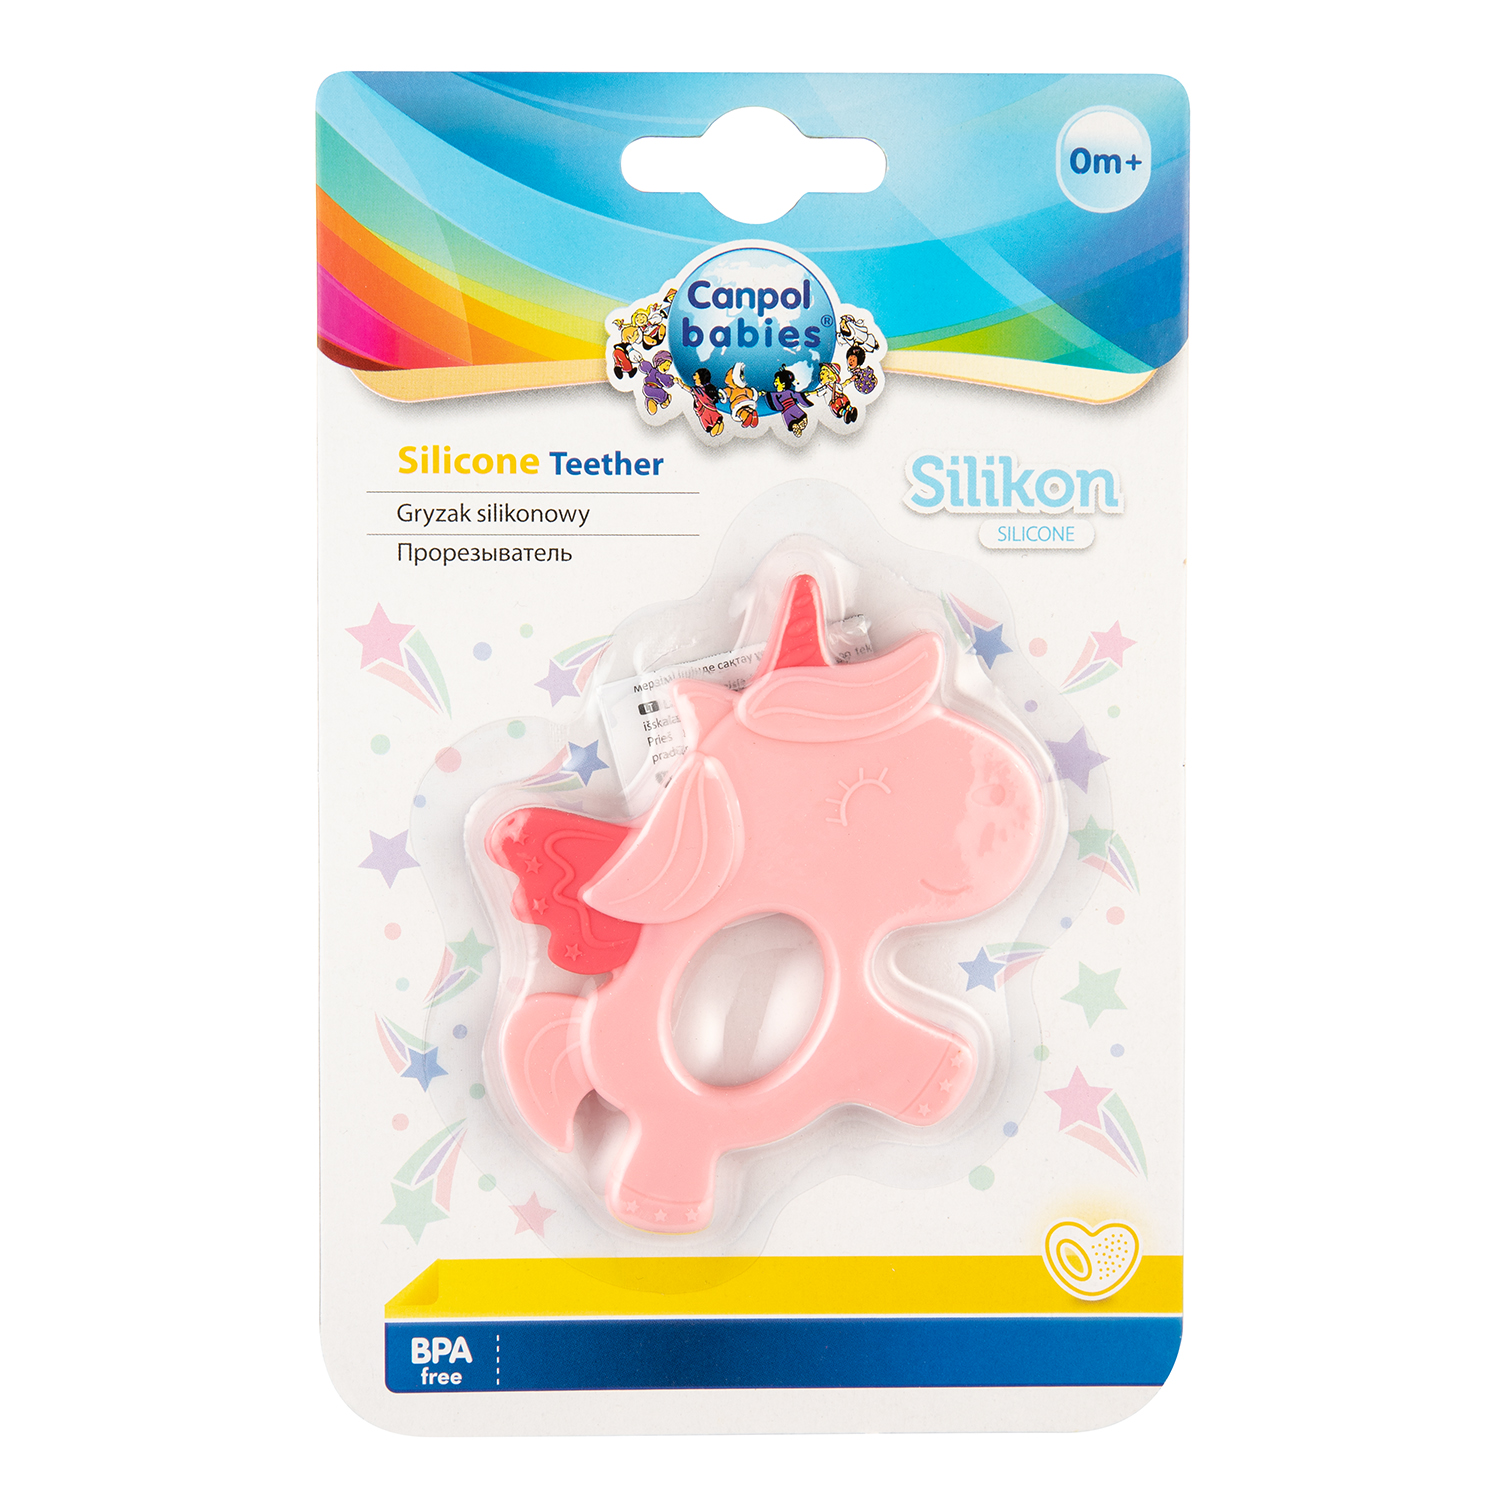 Canpol Babies 51/007 Różowy silikonowy gryzak